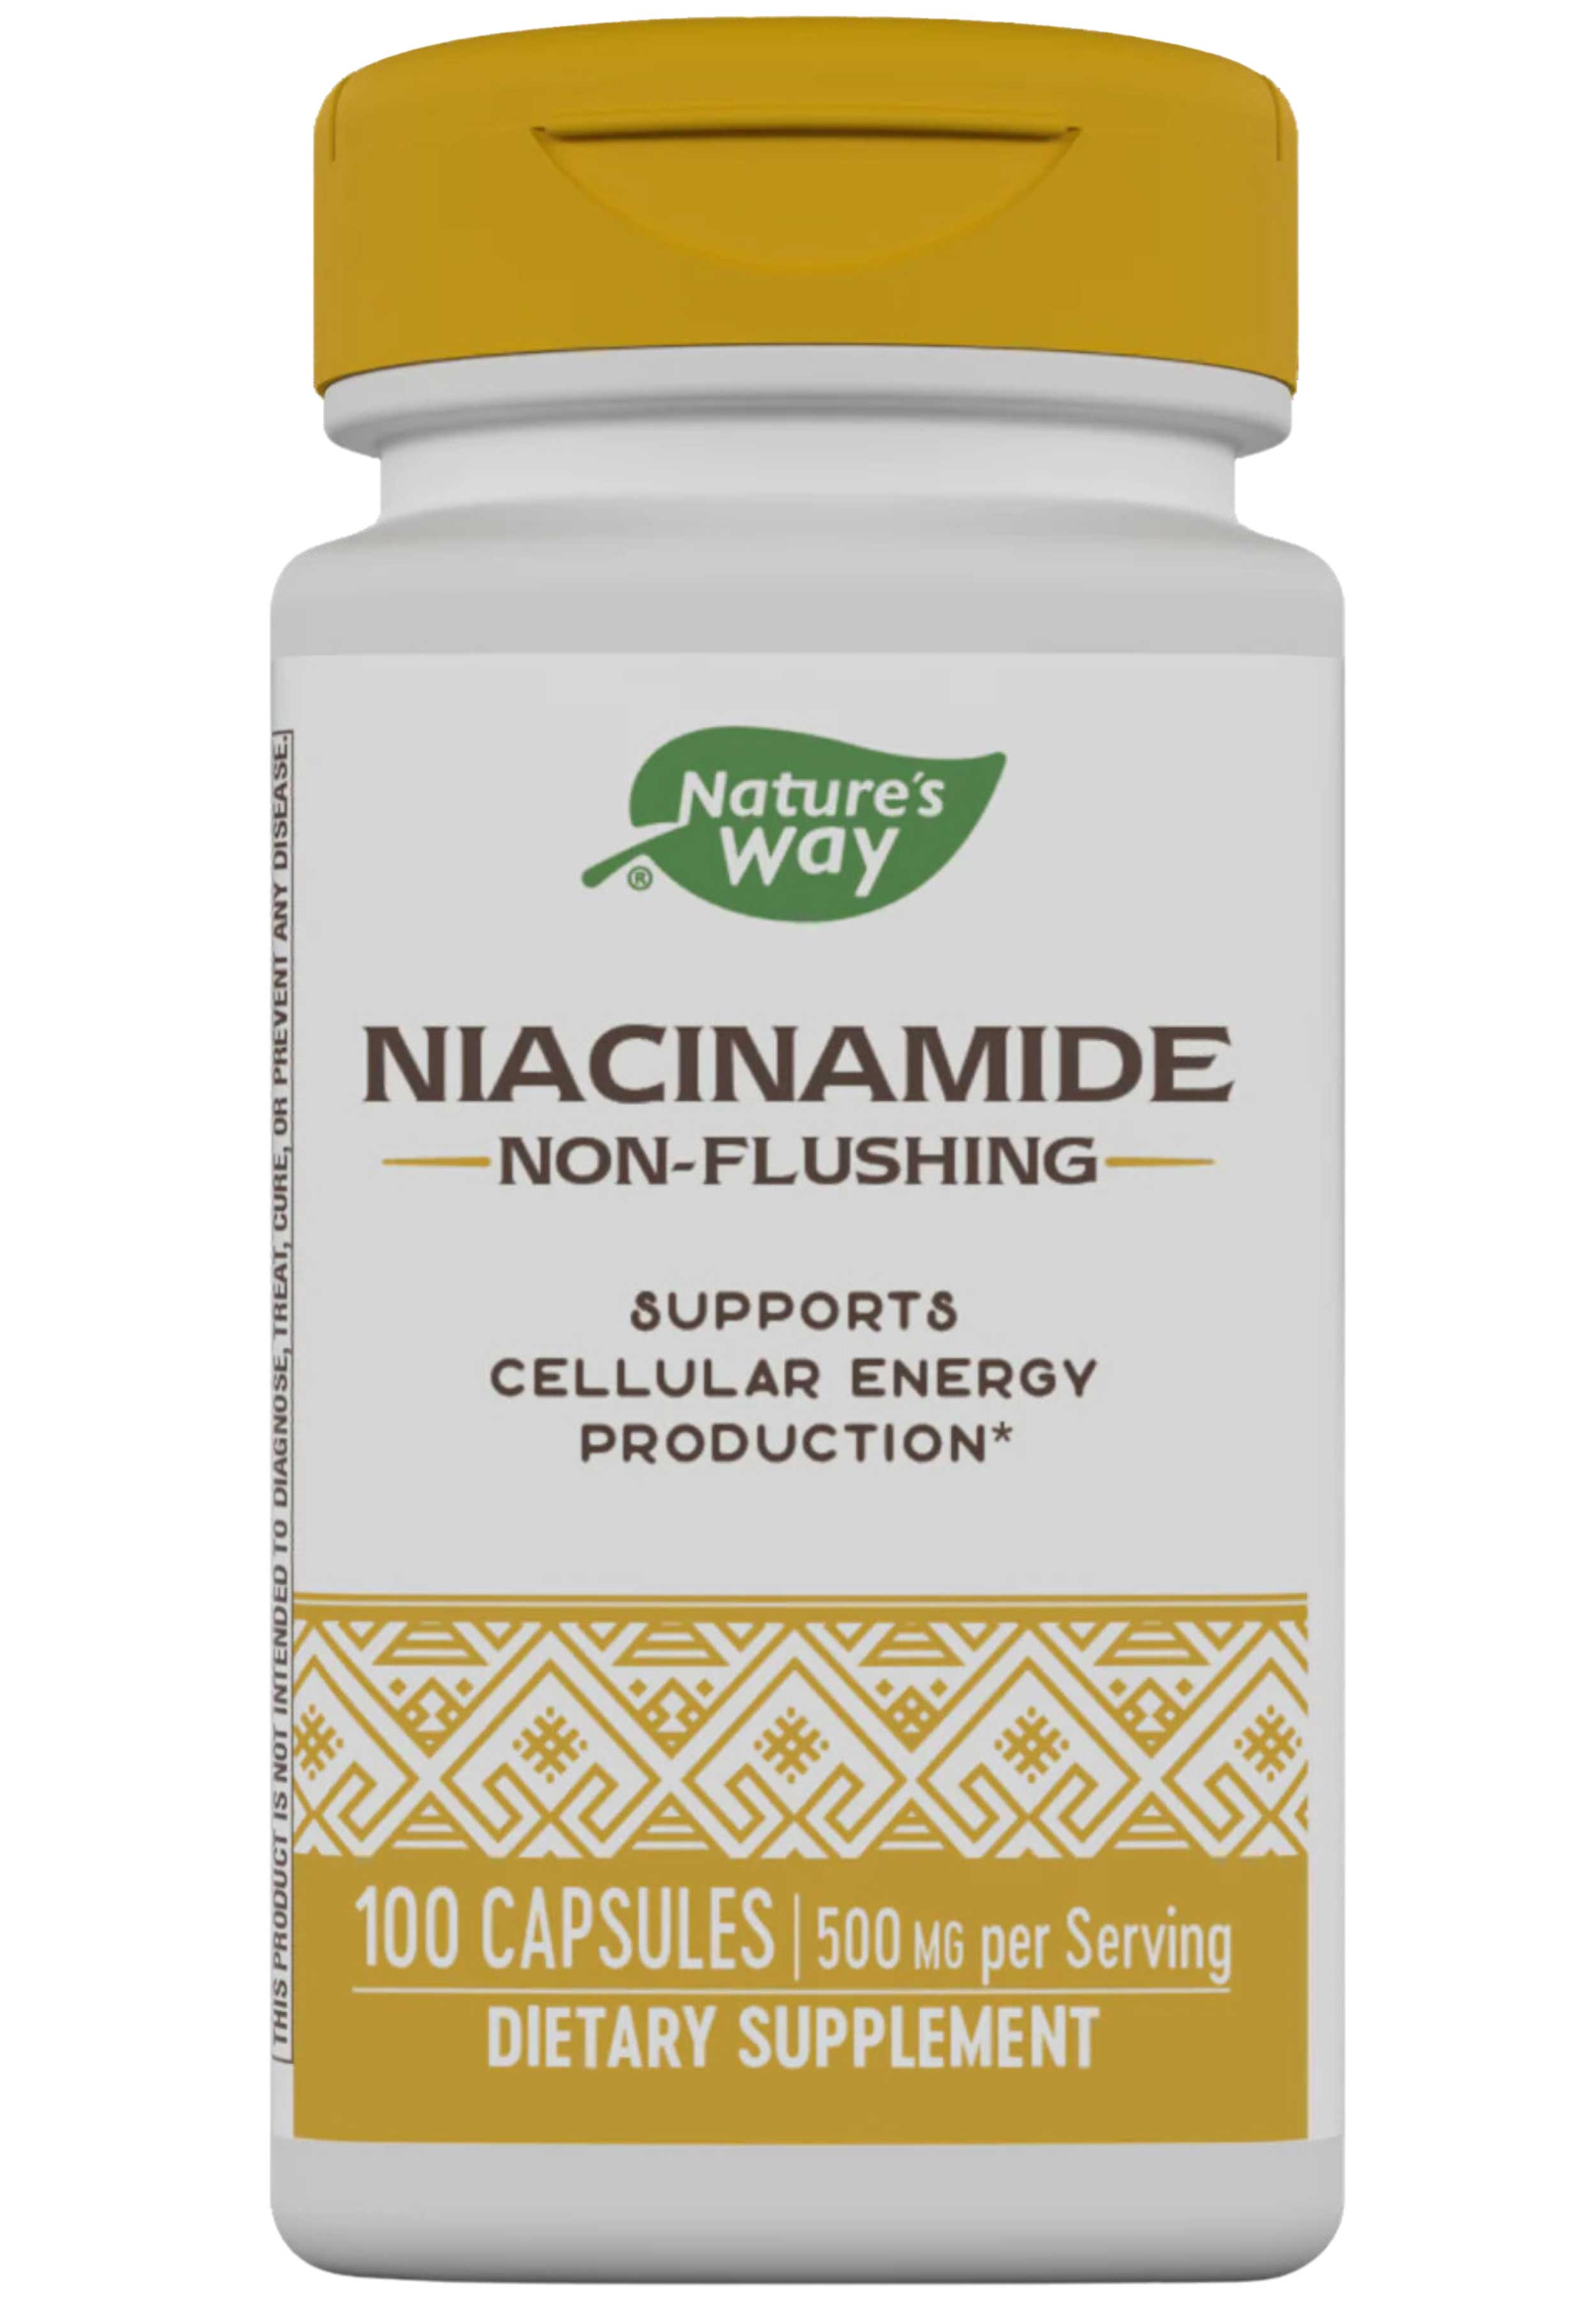 Nature's Way Niacinamide 500 mg